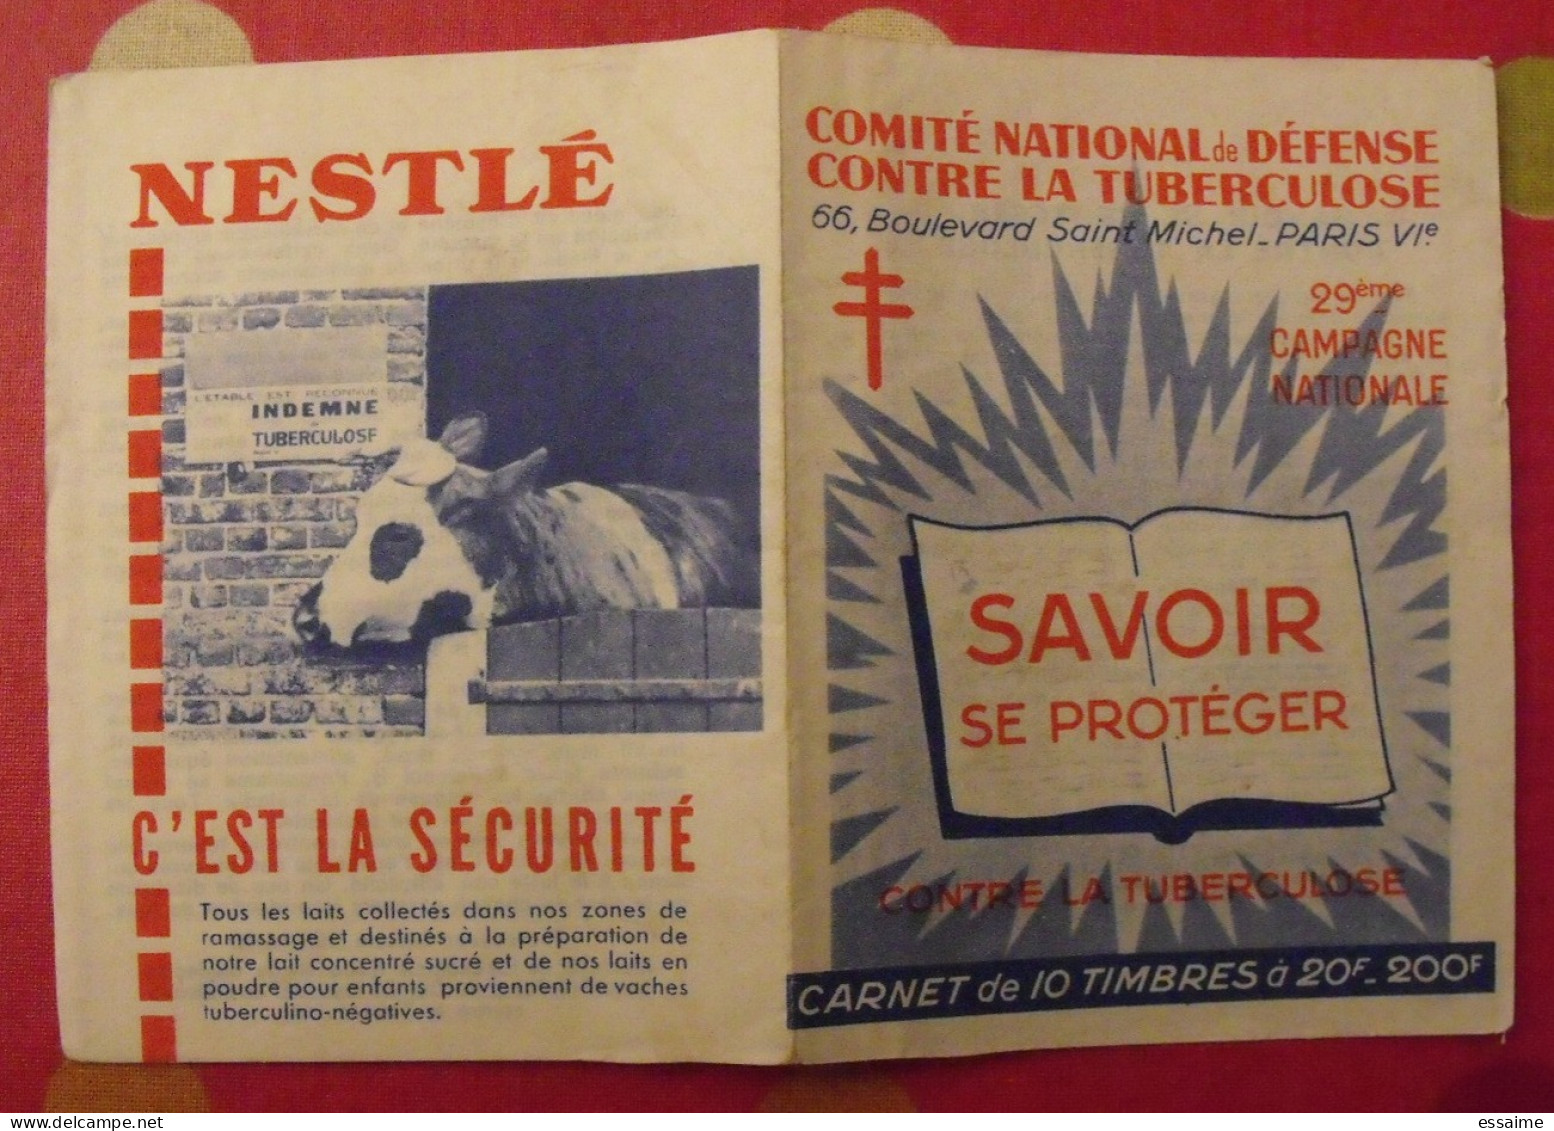 Carnet De Timbres Antituberculeux 1959-60. Pub Nestlé . Tuberculose Anti-tuberculeux. - Tuberkulose-Serien